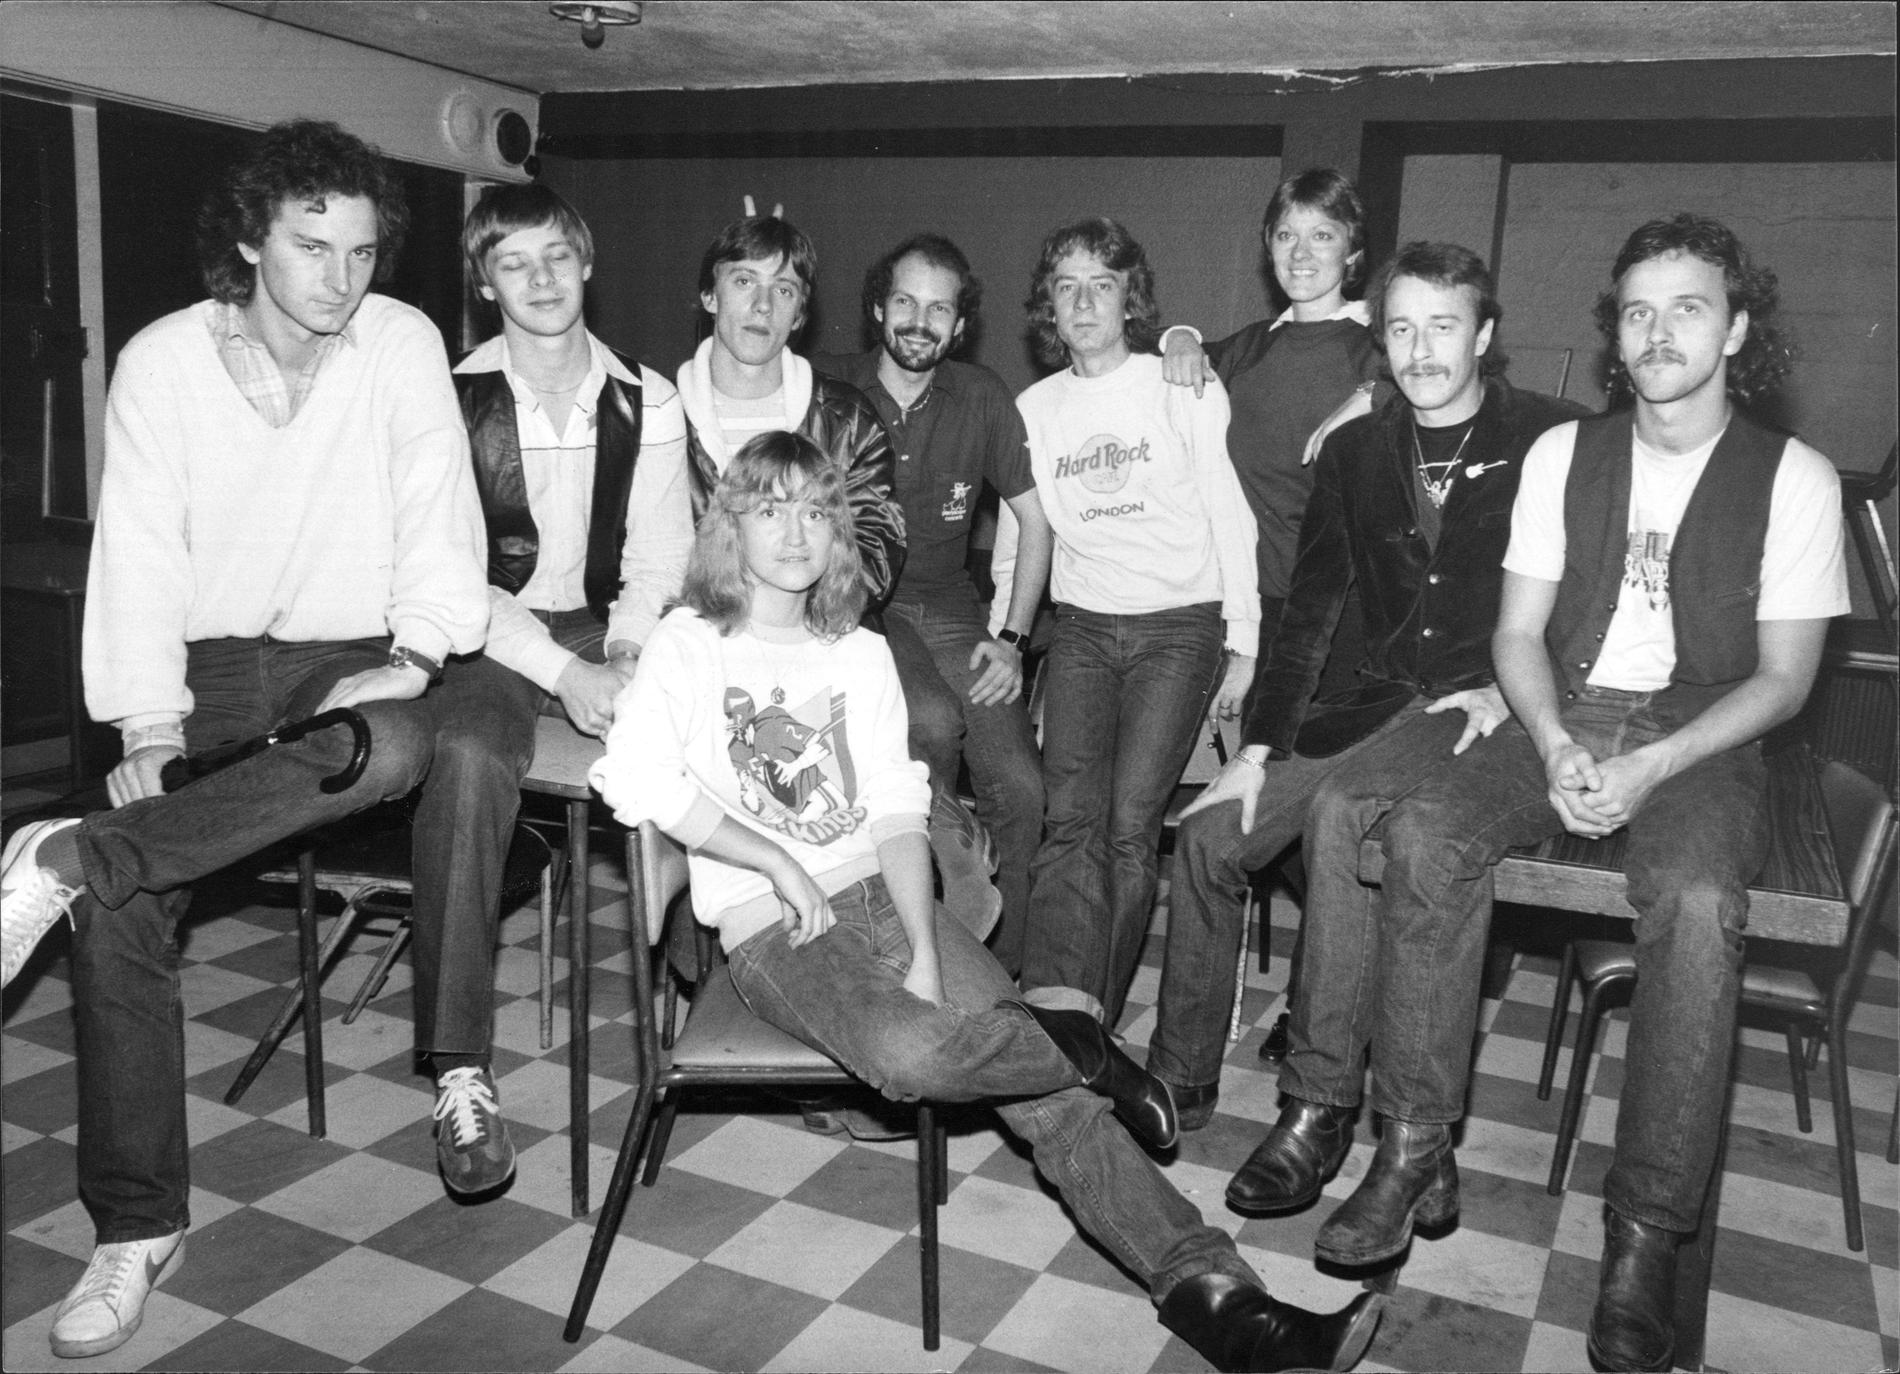 Liza Öhman körade på Abbas första världsturné 1979 till 1980. Här i förgrunden tillsammans med resten av Abbas turnéband, från vänster Tomas Ledin, Anders Eljas, Mats Ronander, Lasse Wellander, Ola Brunkert, Birgitta Wollgård, Rutger Gunnarsson och Åke Sundqvist.